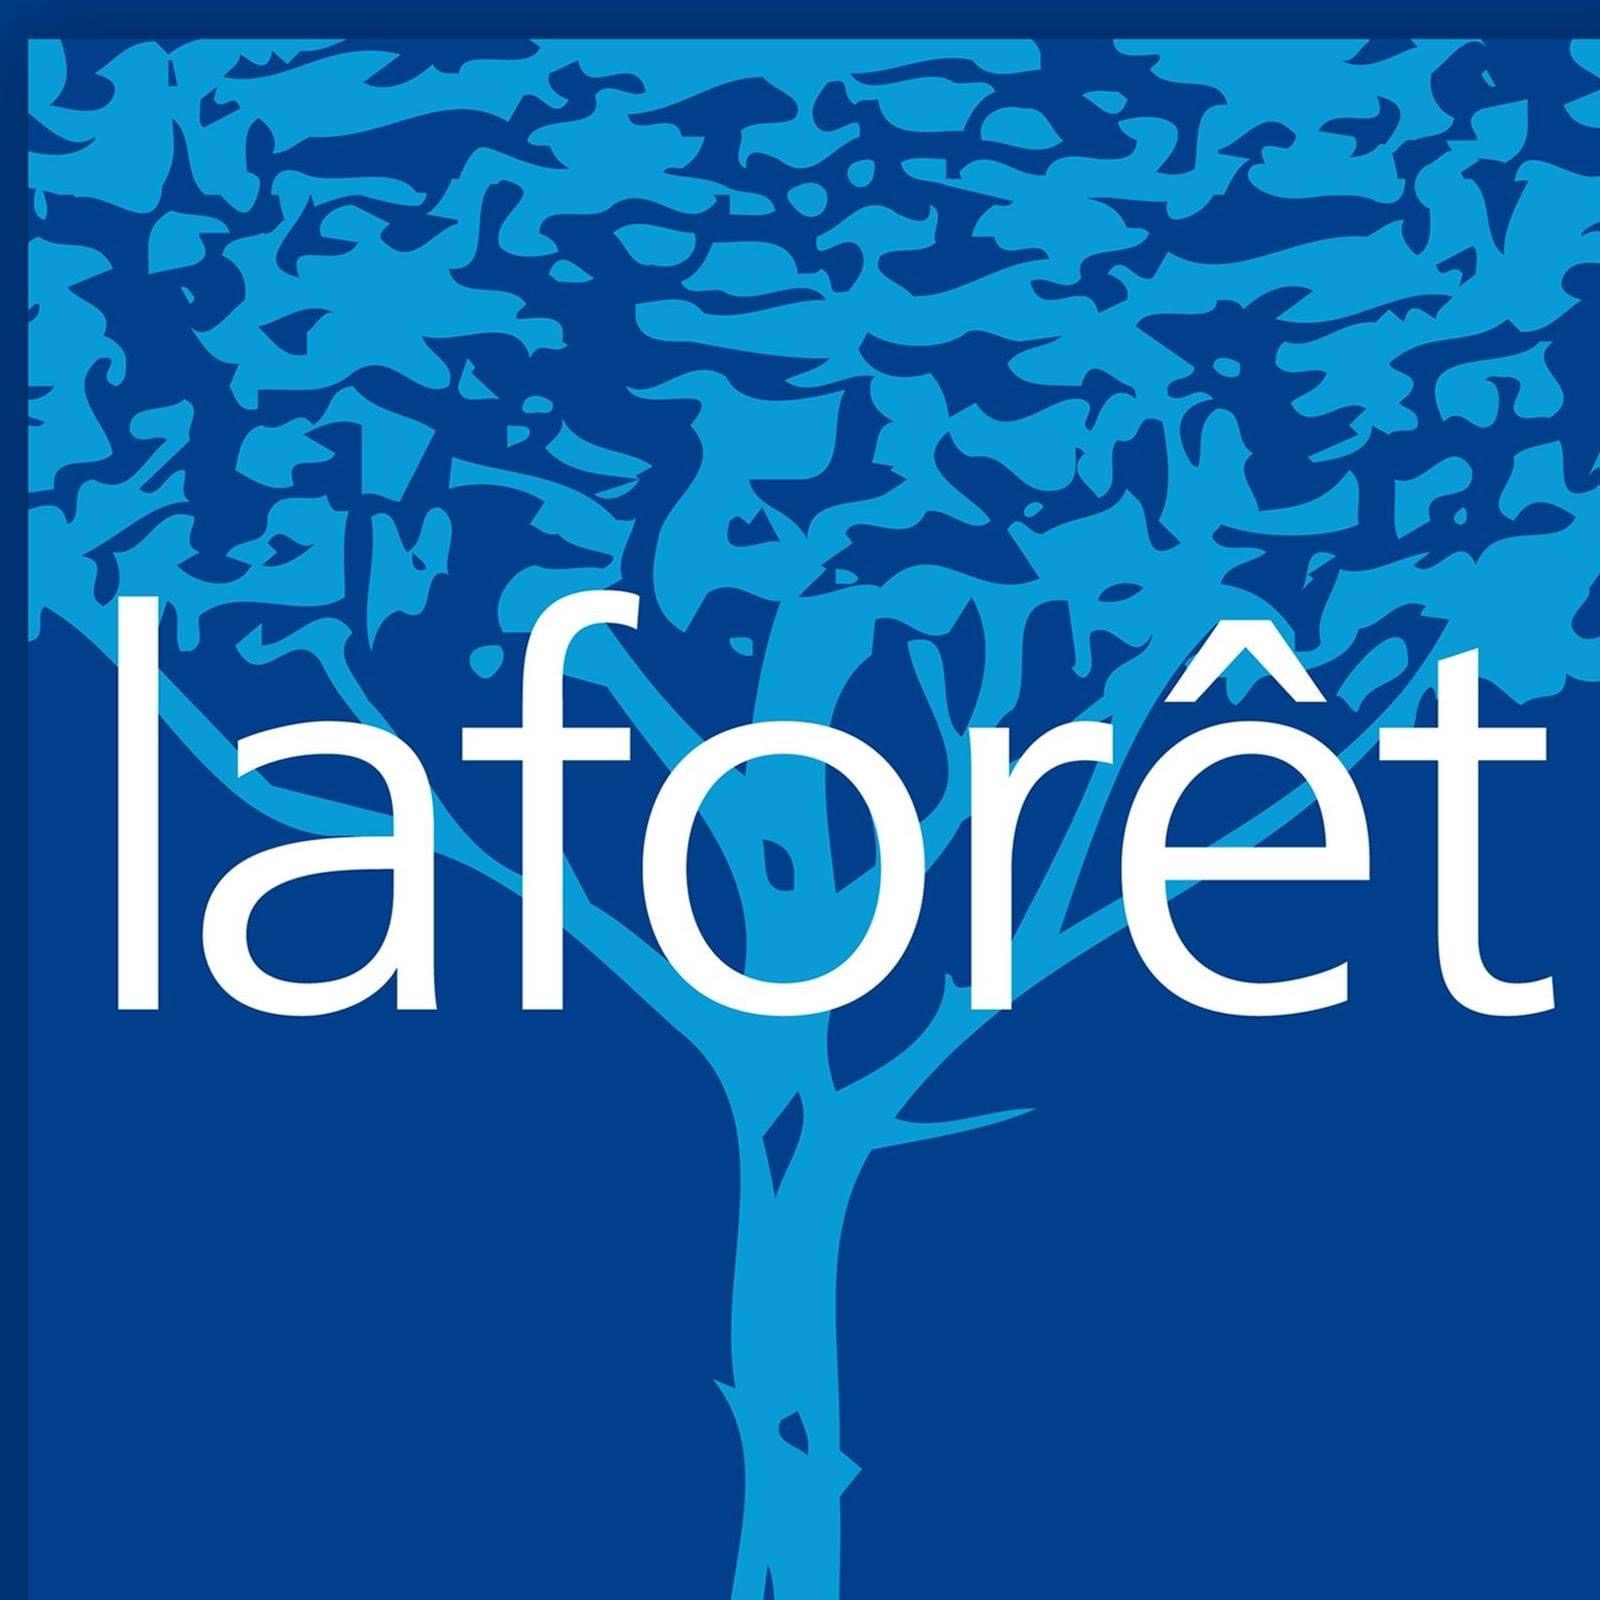 Logo Laforêt